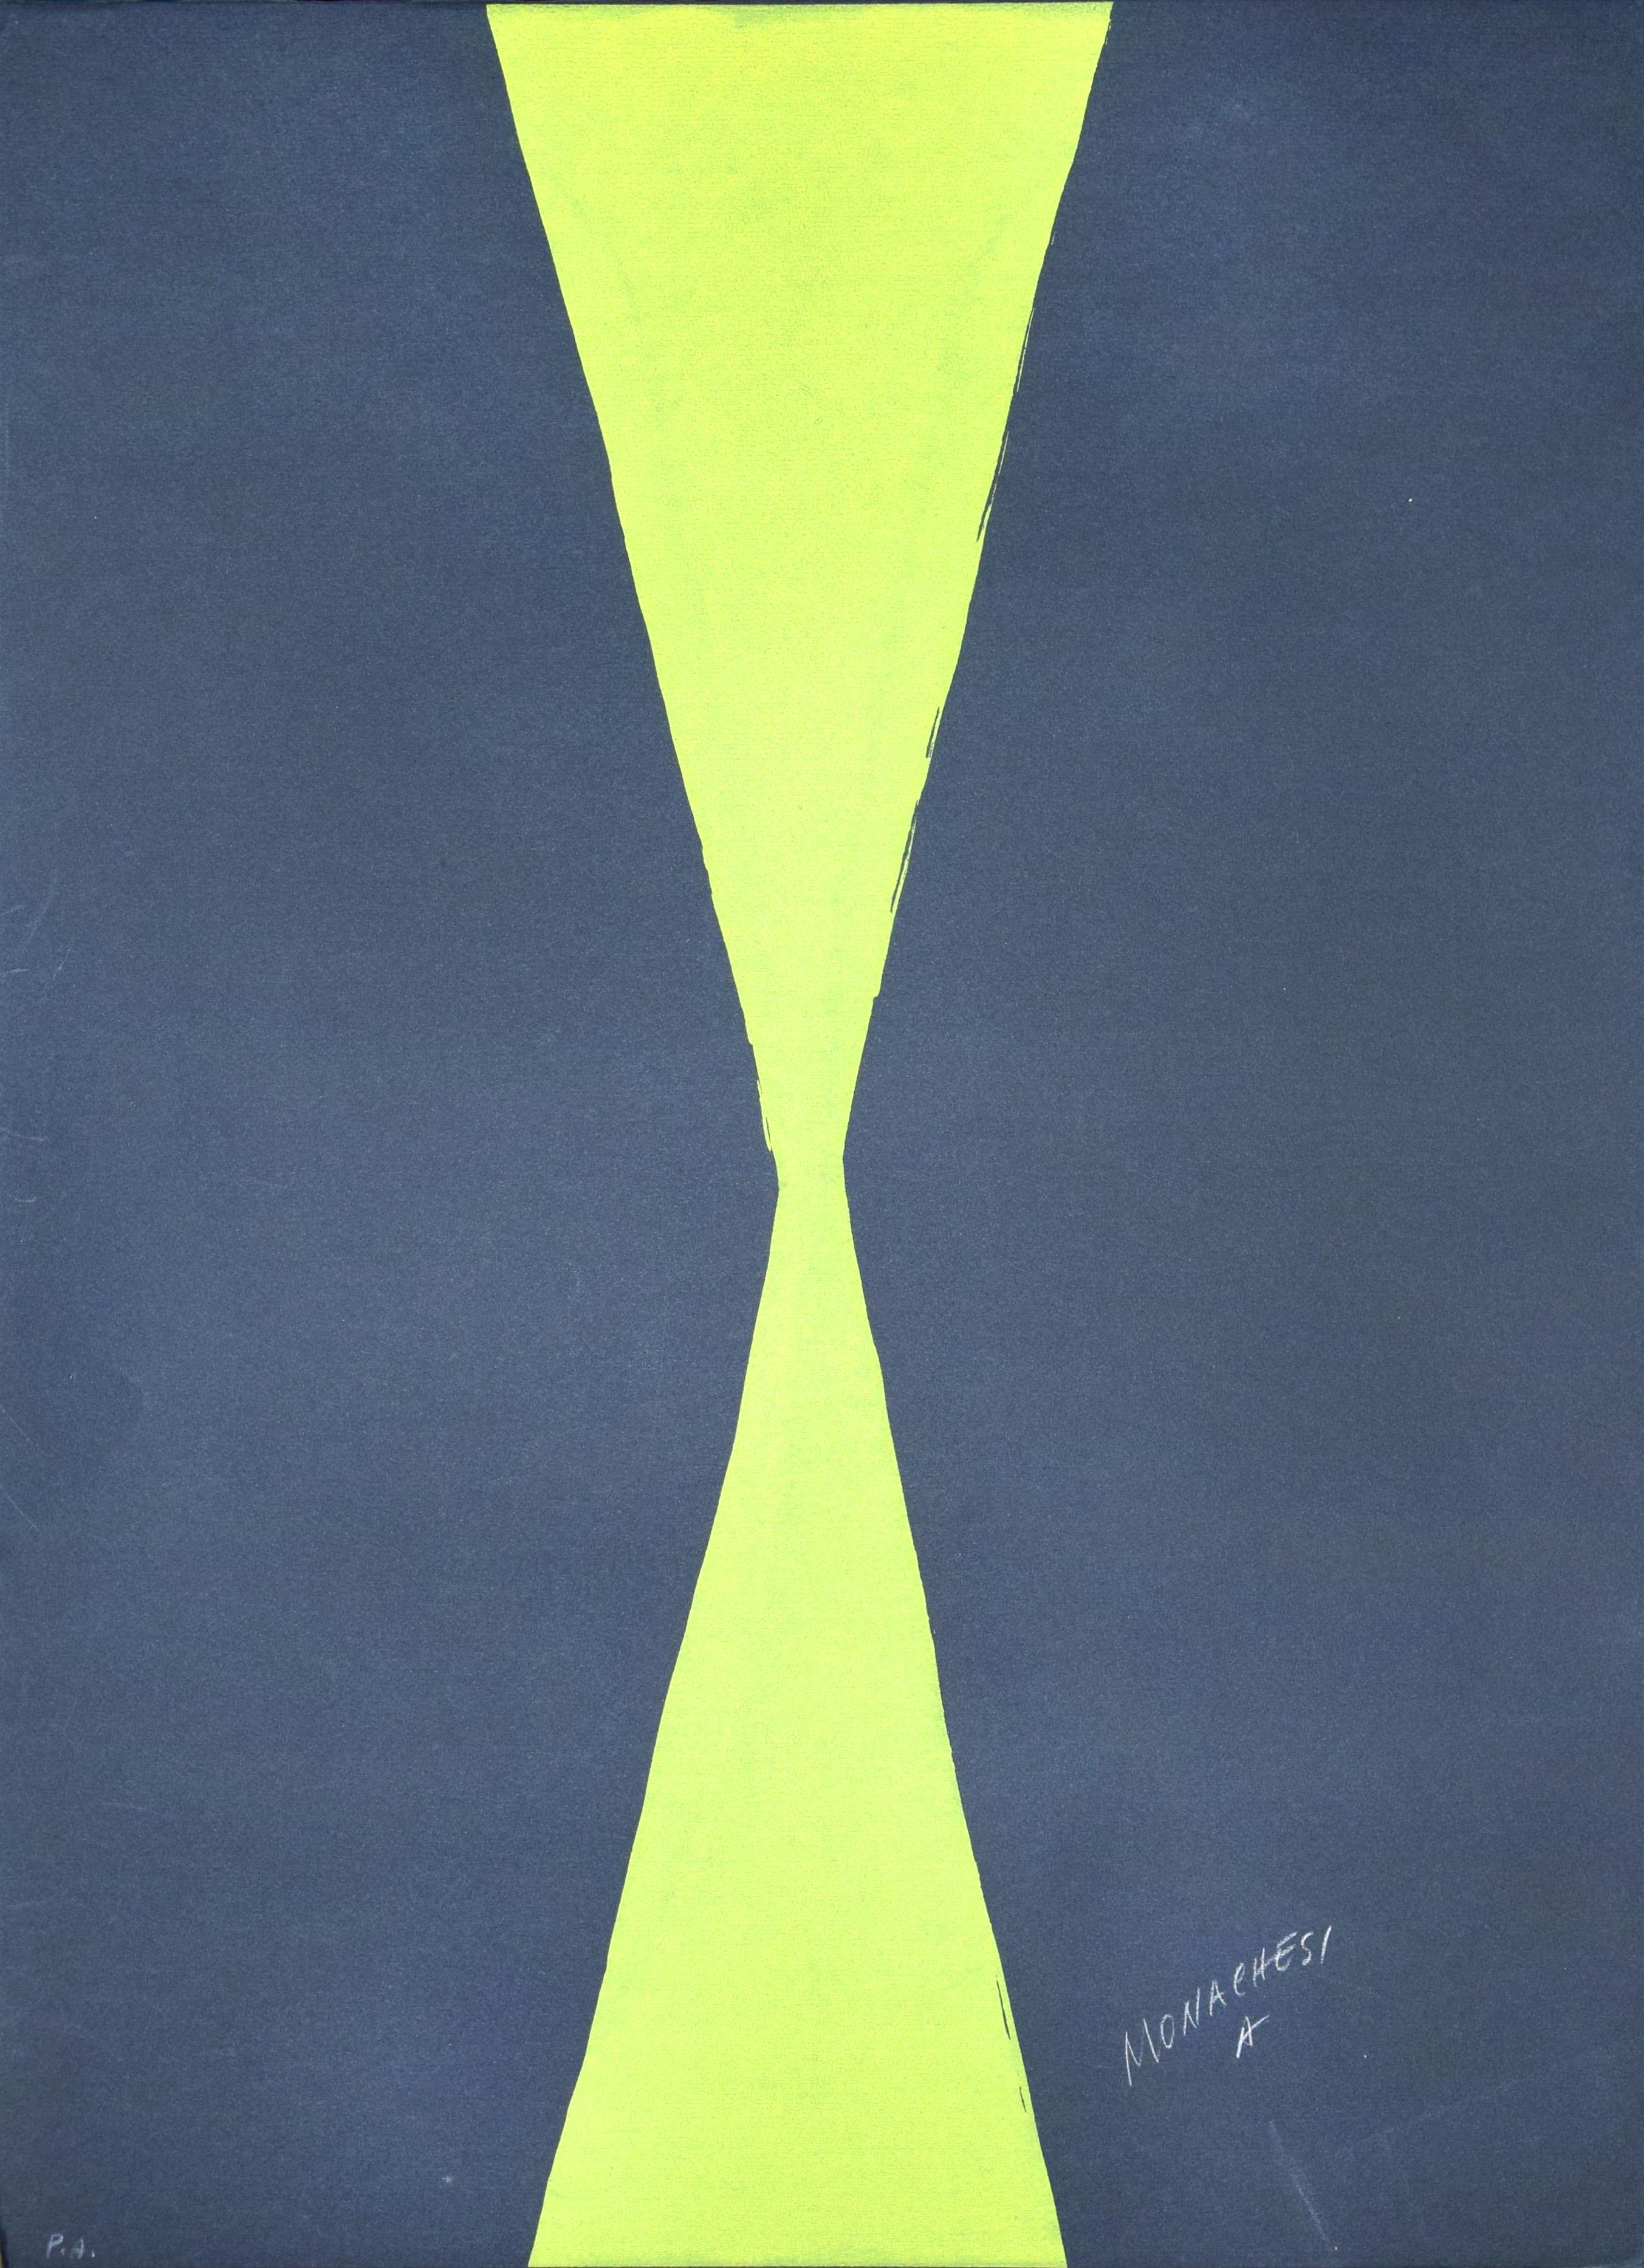 Green Hourglass - 20th Century - Sante Monachesi - Serigraph - Contemporary